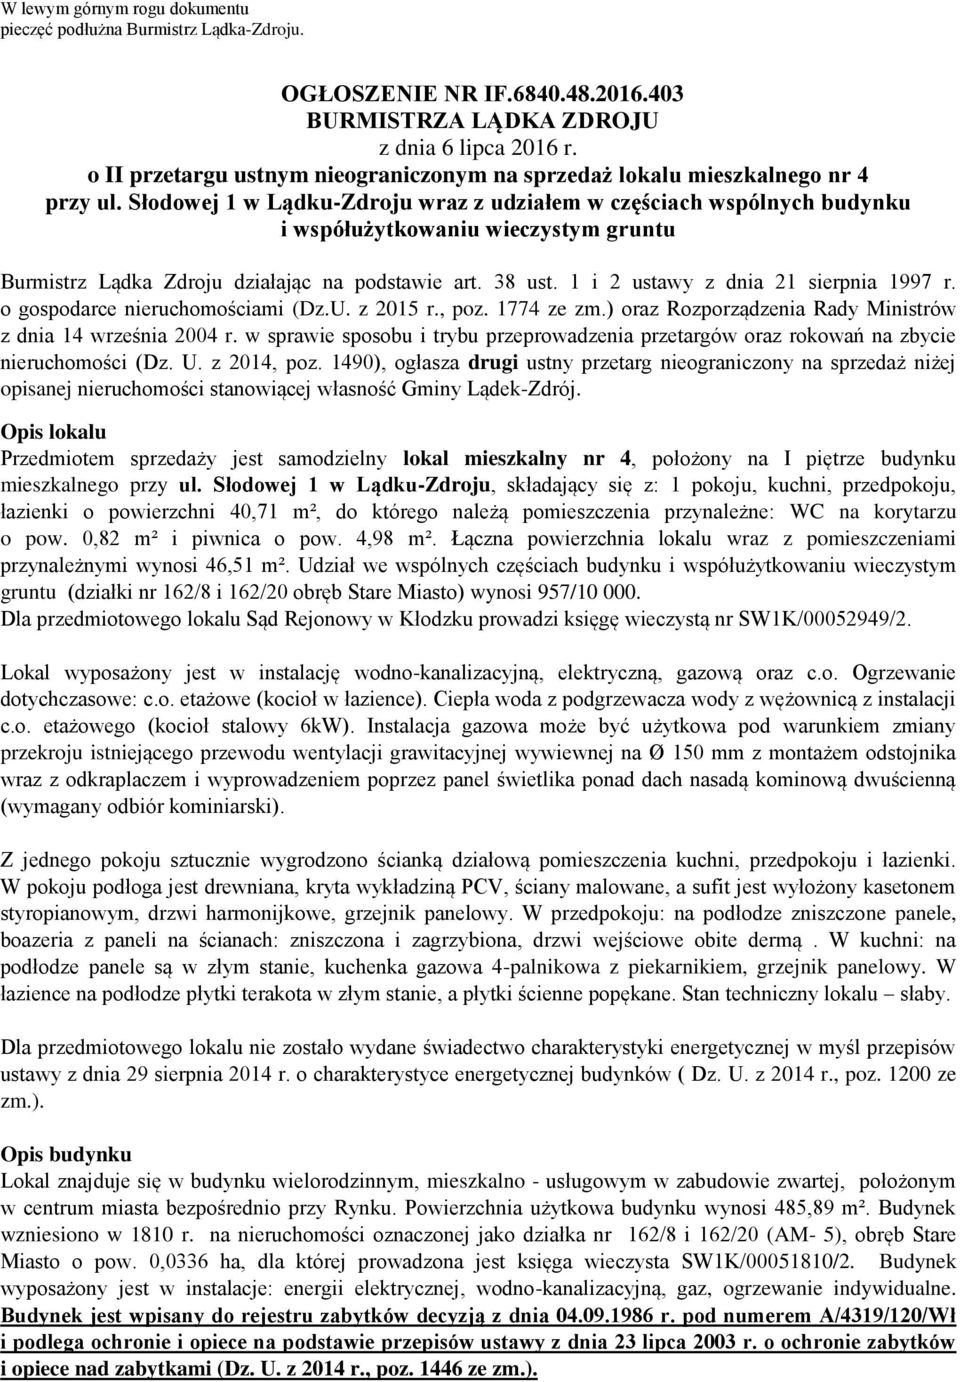 Słodowej 1 w Lądku-Zdroju wraz z udziałem w częściach wspólnych budynku i współużytkowaniu wieczystym gruntu Burmistrz Lądka Zdroju działając na podstawie art. 38 ust.